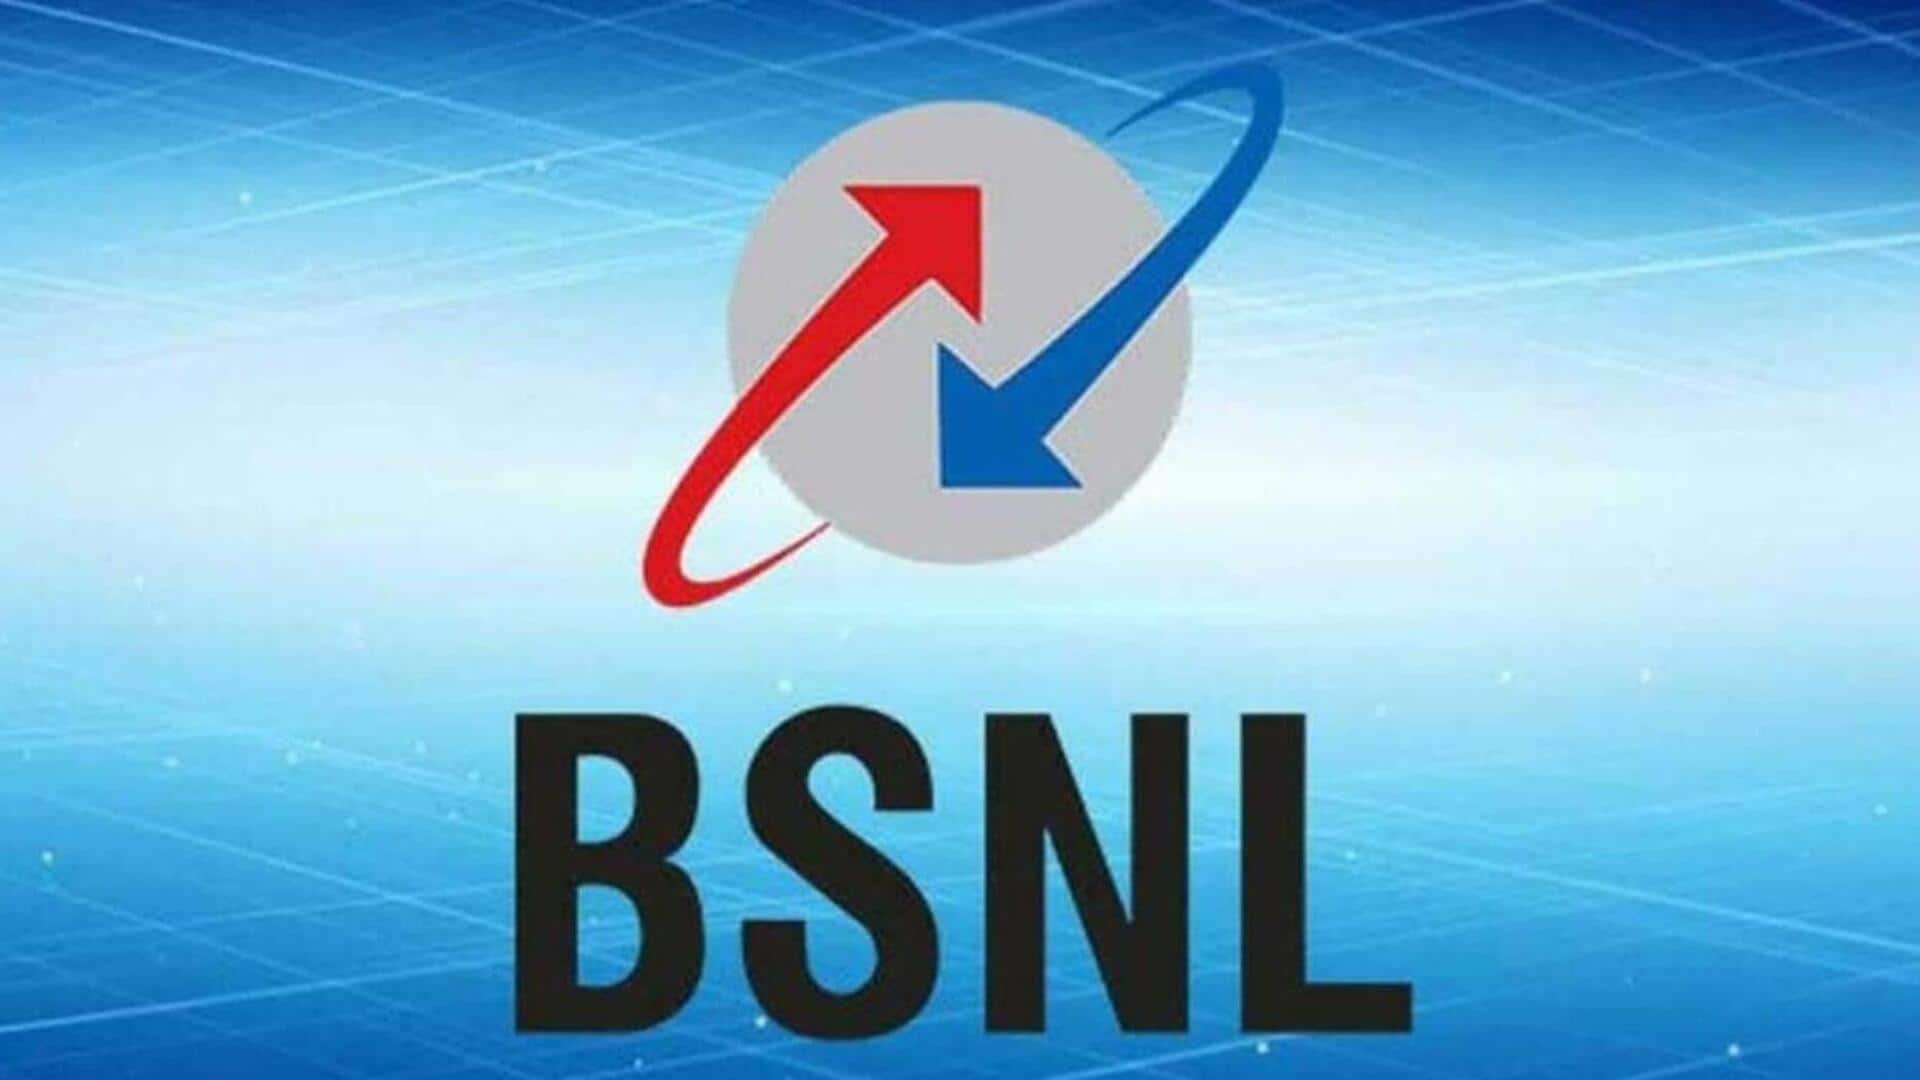 BSNL के इन सस्ते प्लांस में लंबी वैलिडिटी के साथ पाएं कॉल, डाटा और अन्य लाभ 